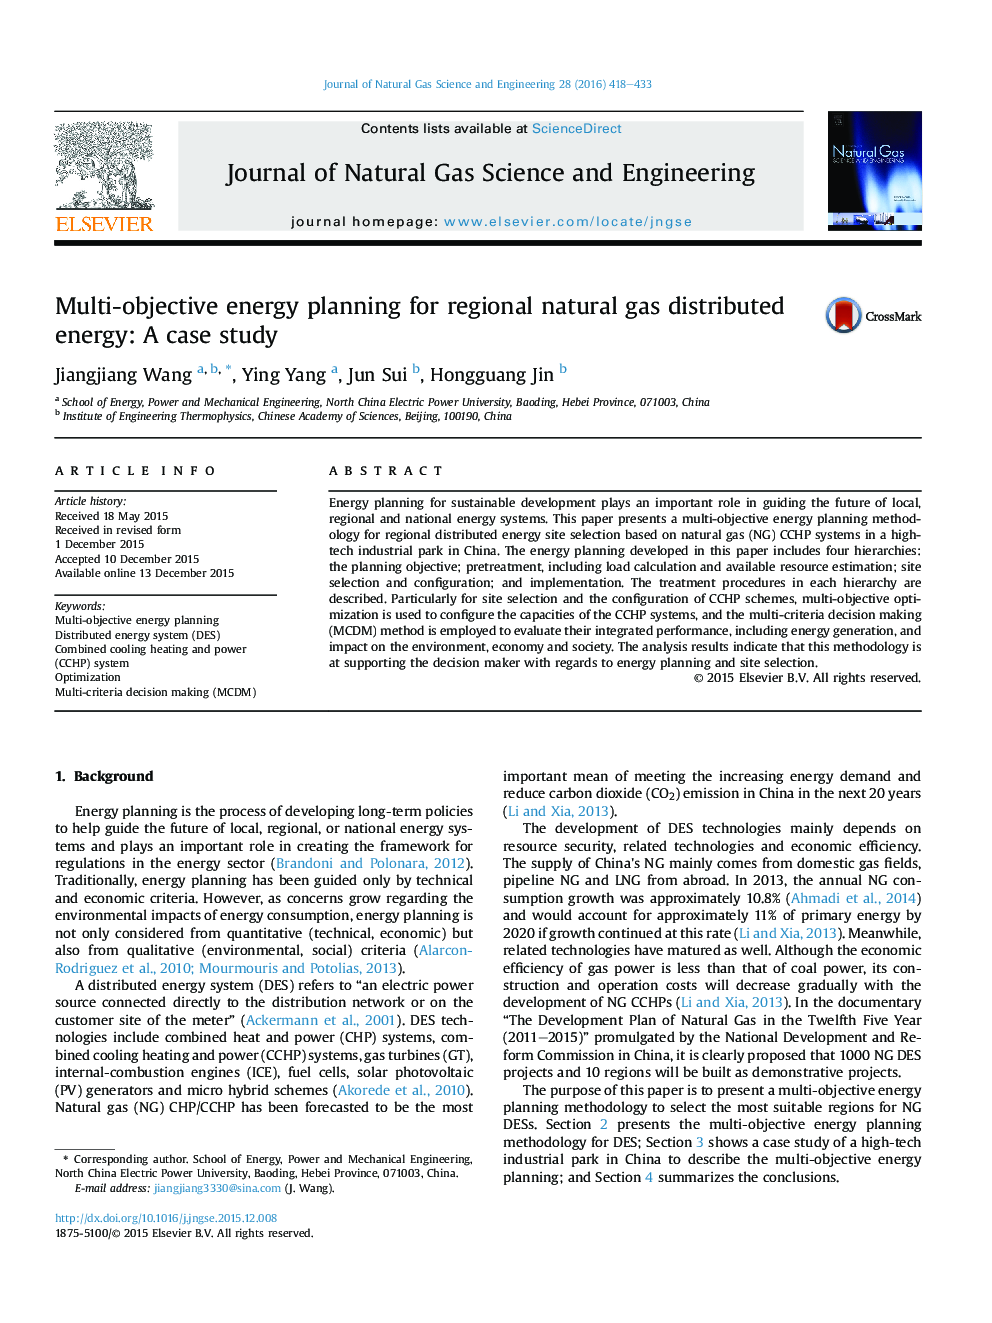 برنامه ریزی چند هدفه برای انرژی منطقه ای توزیع گاز طبیعی منطقه ای: مطالعه موردی 